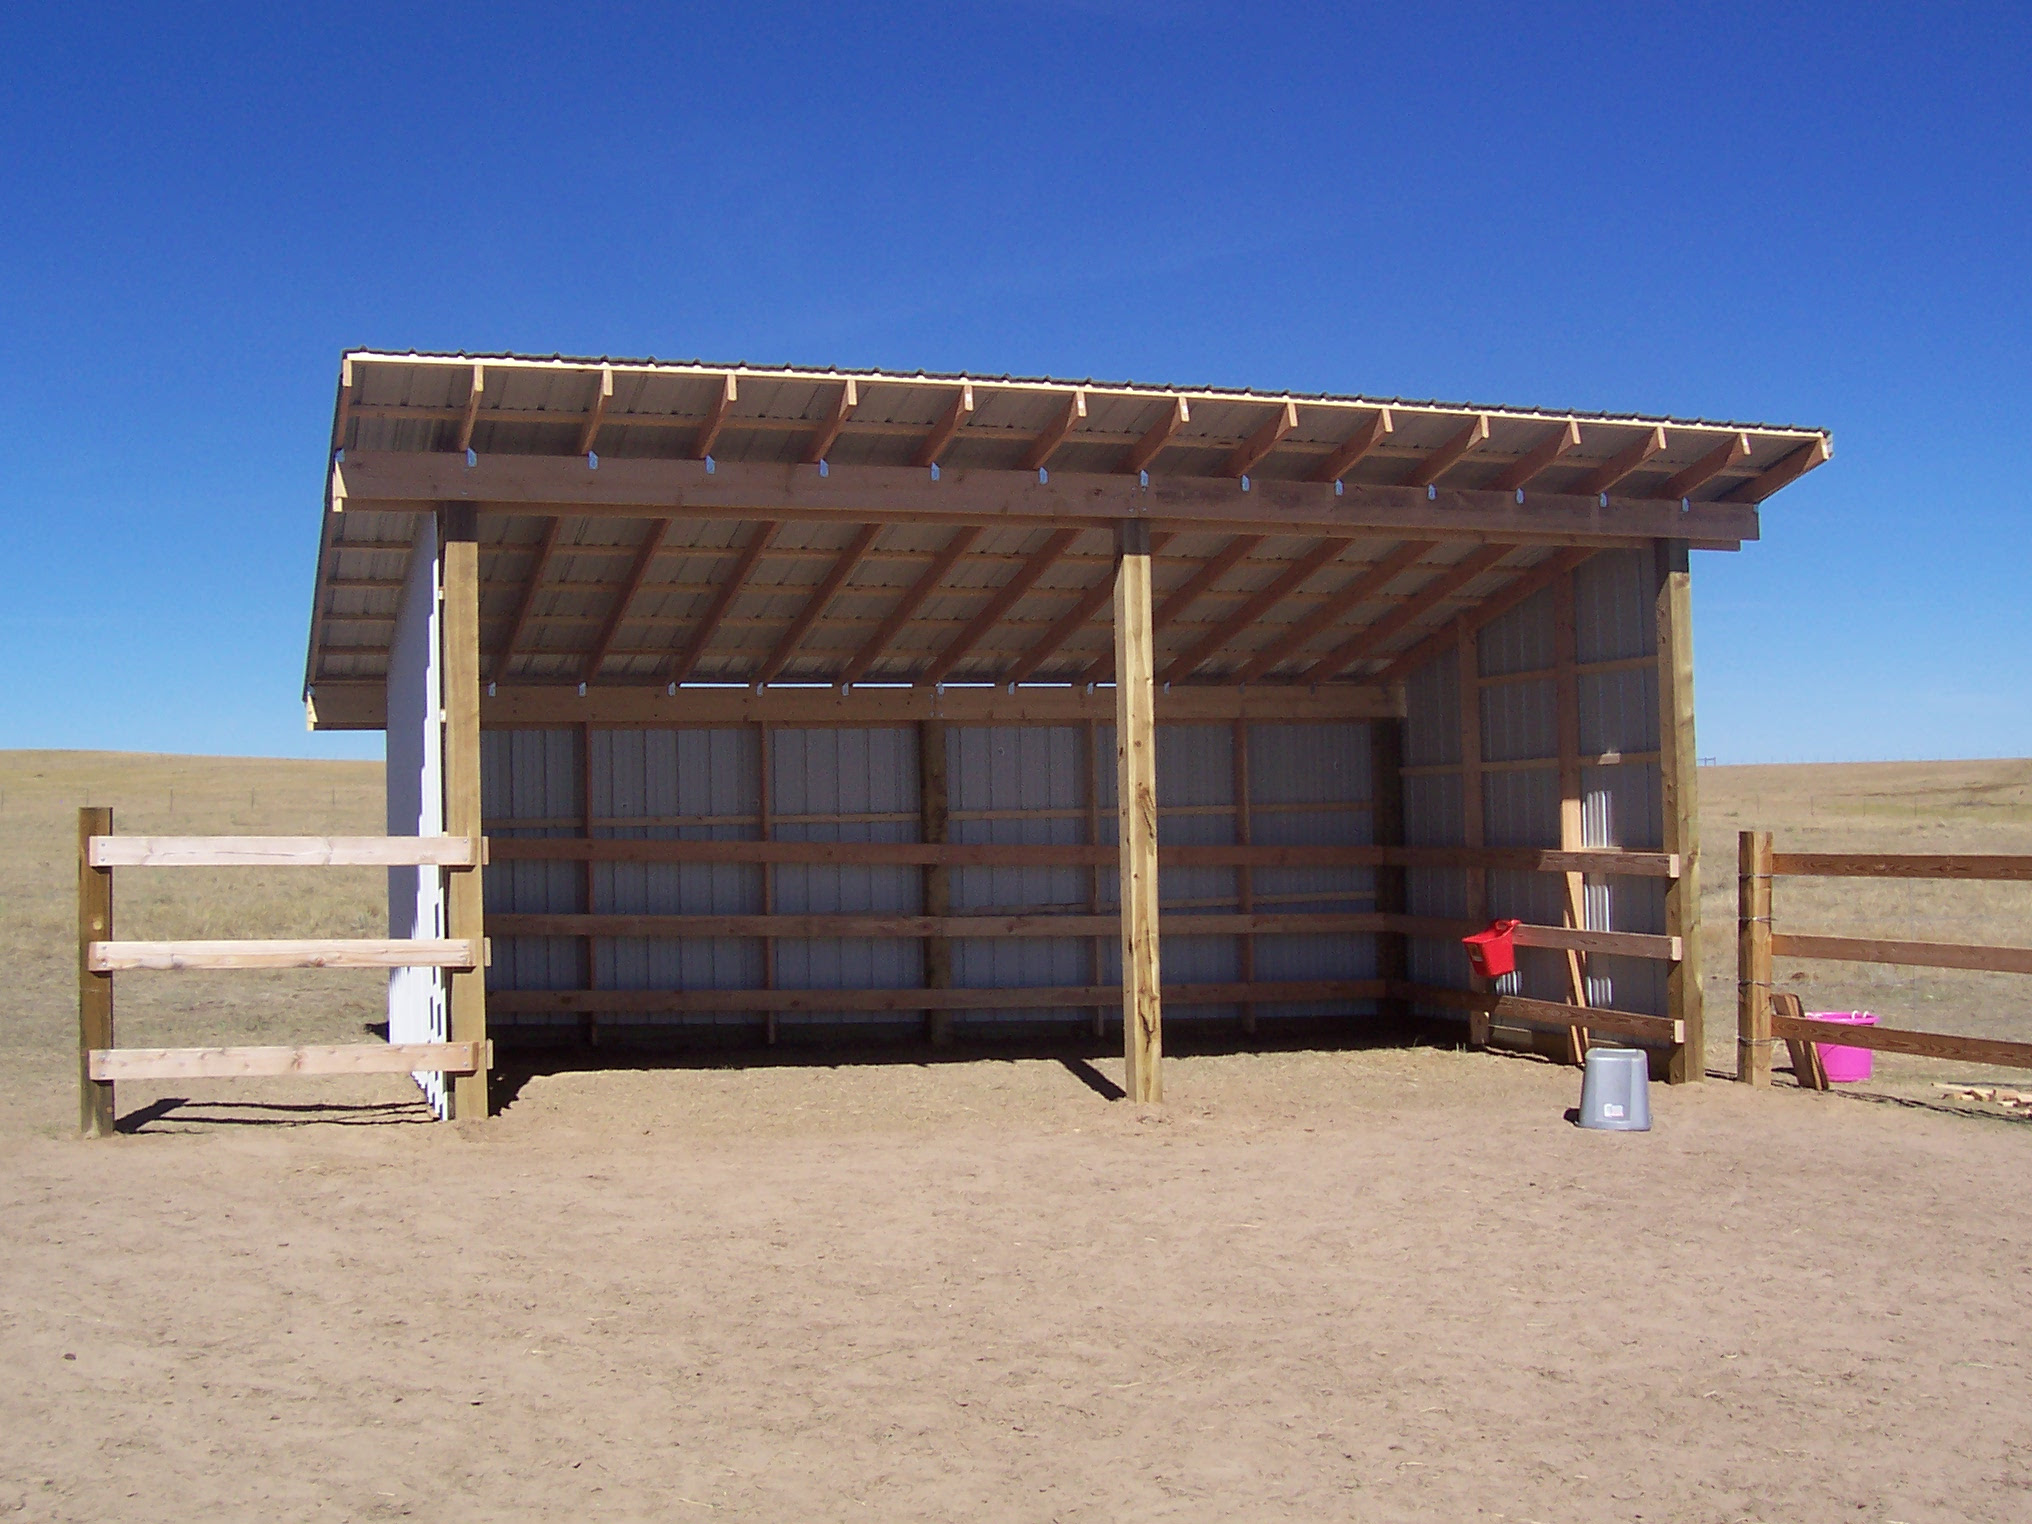 karen bl: access plans for horse loafing sheds